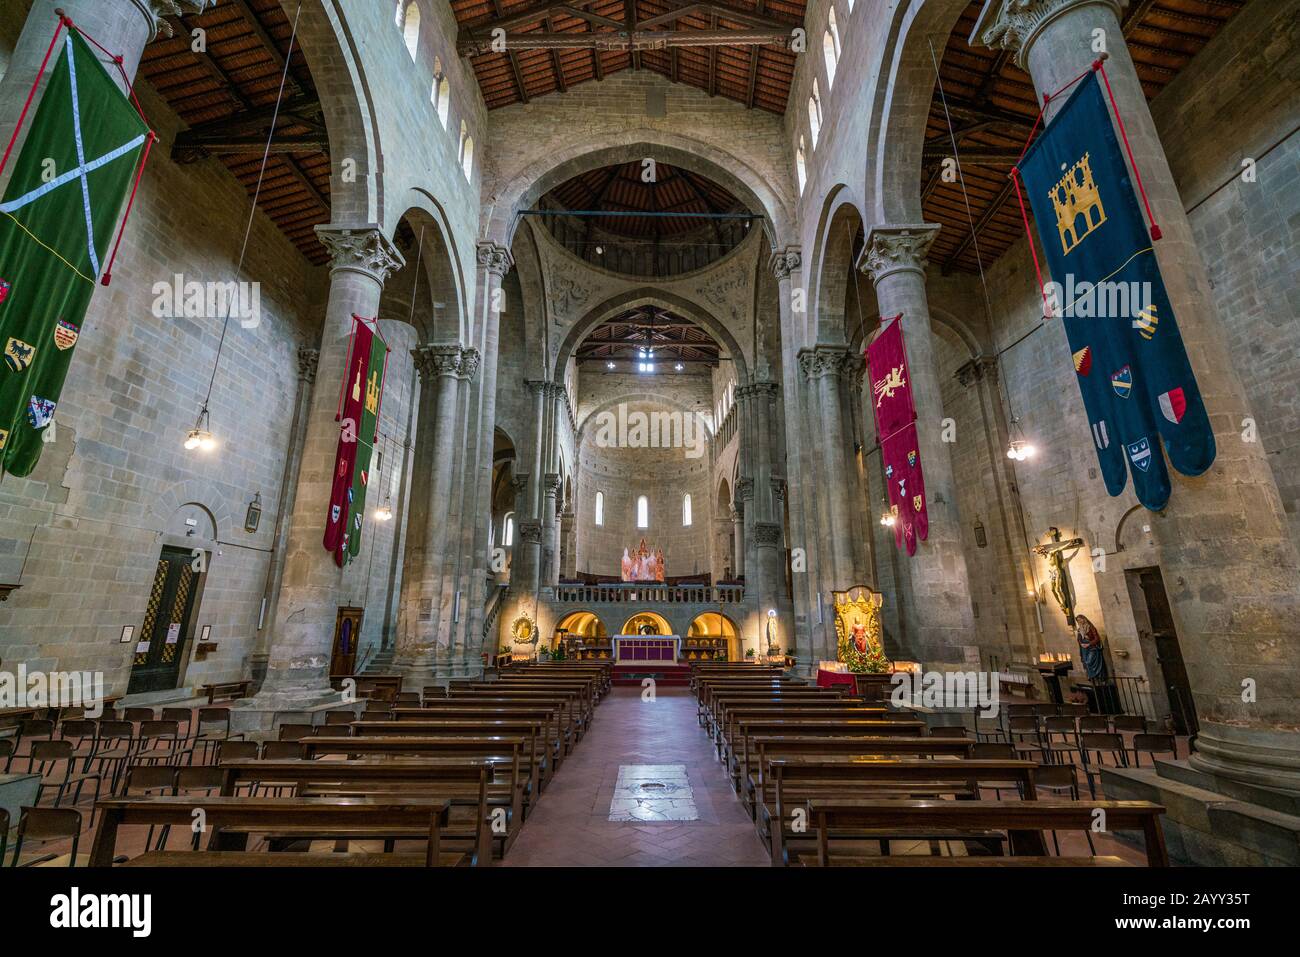 Interior view in the Church of Santa Maria della Pieve in Arezzo, Tuscant, Italy. Stock Photo